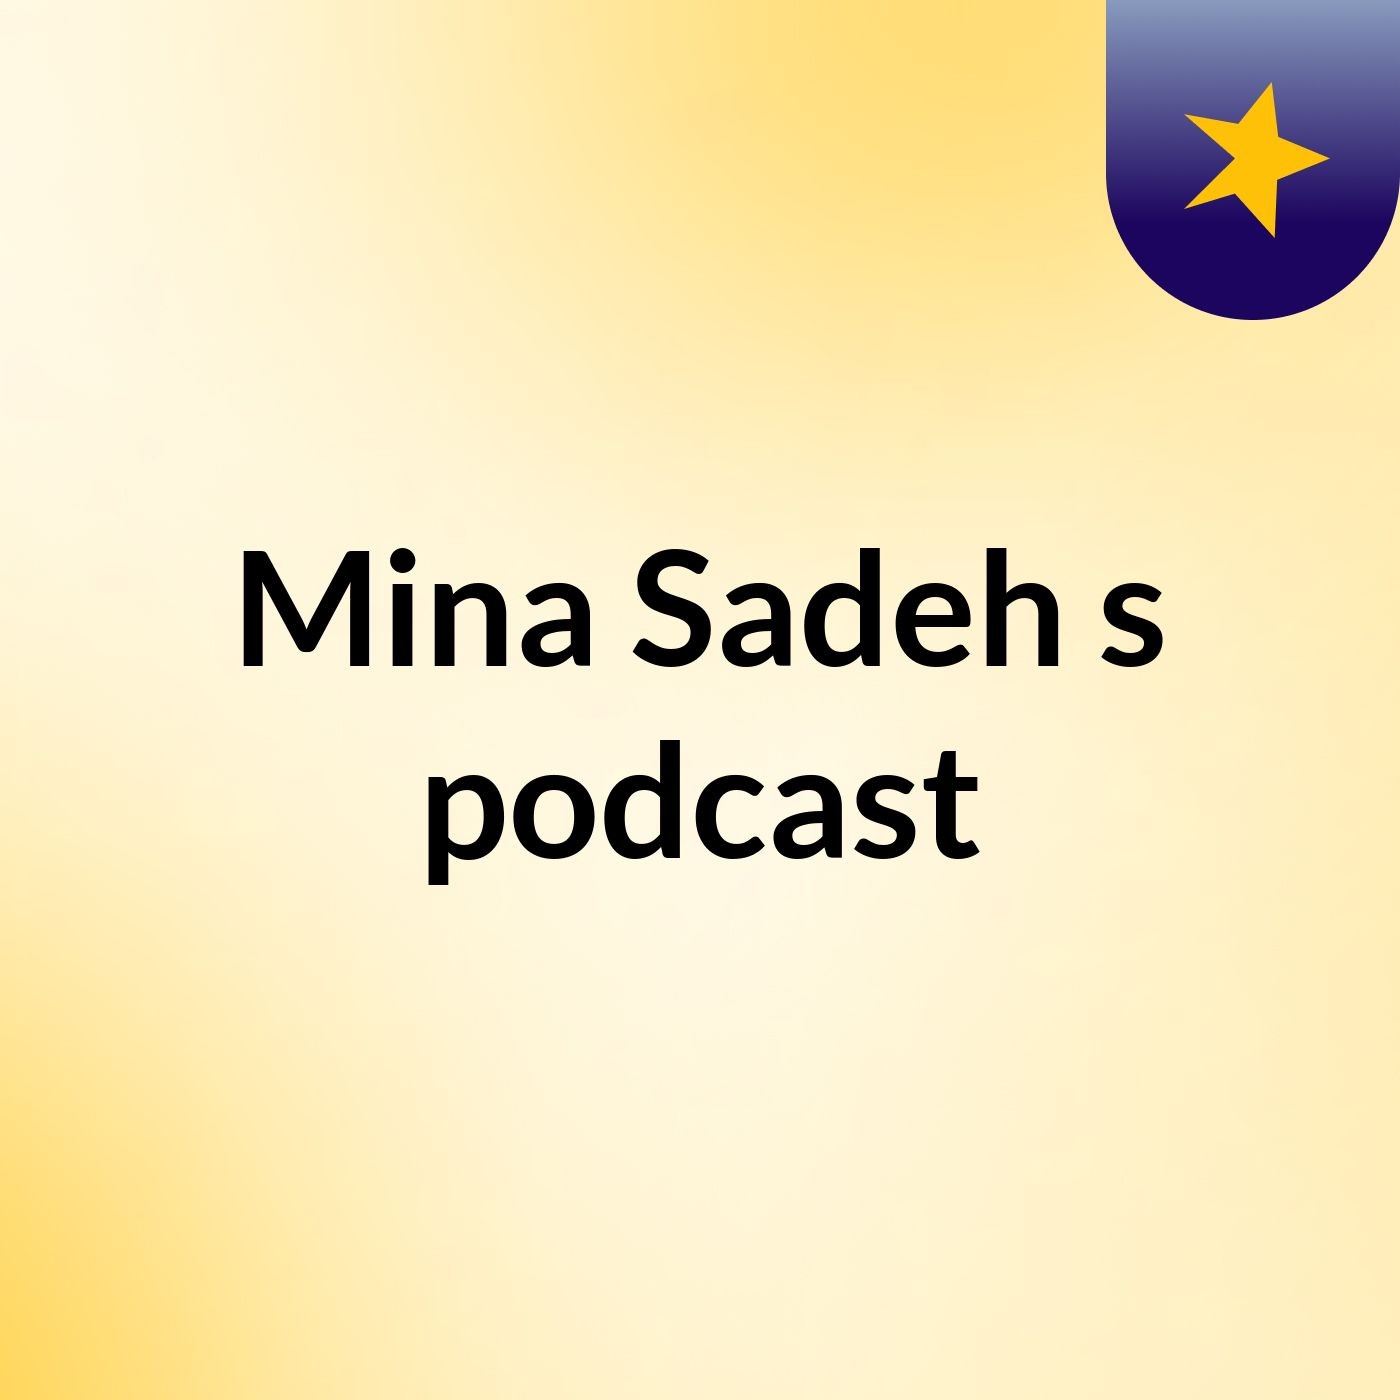 Mina Sadeh's podcast